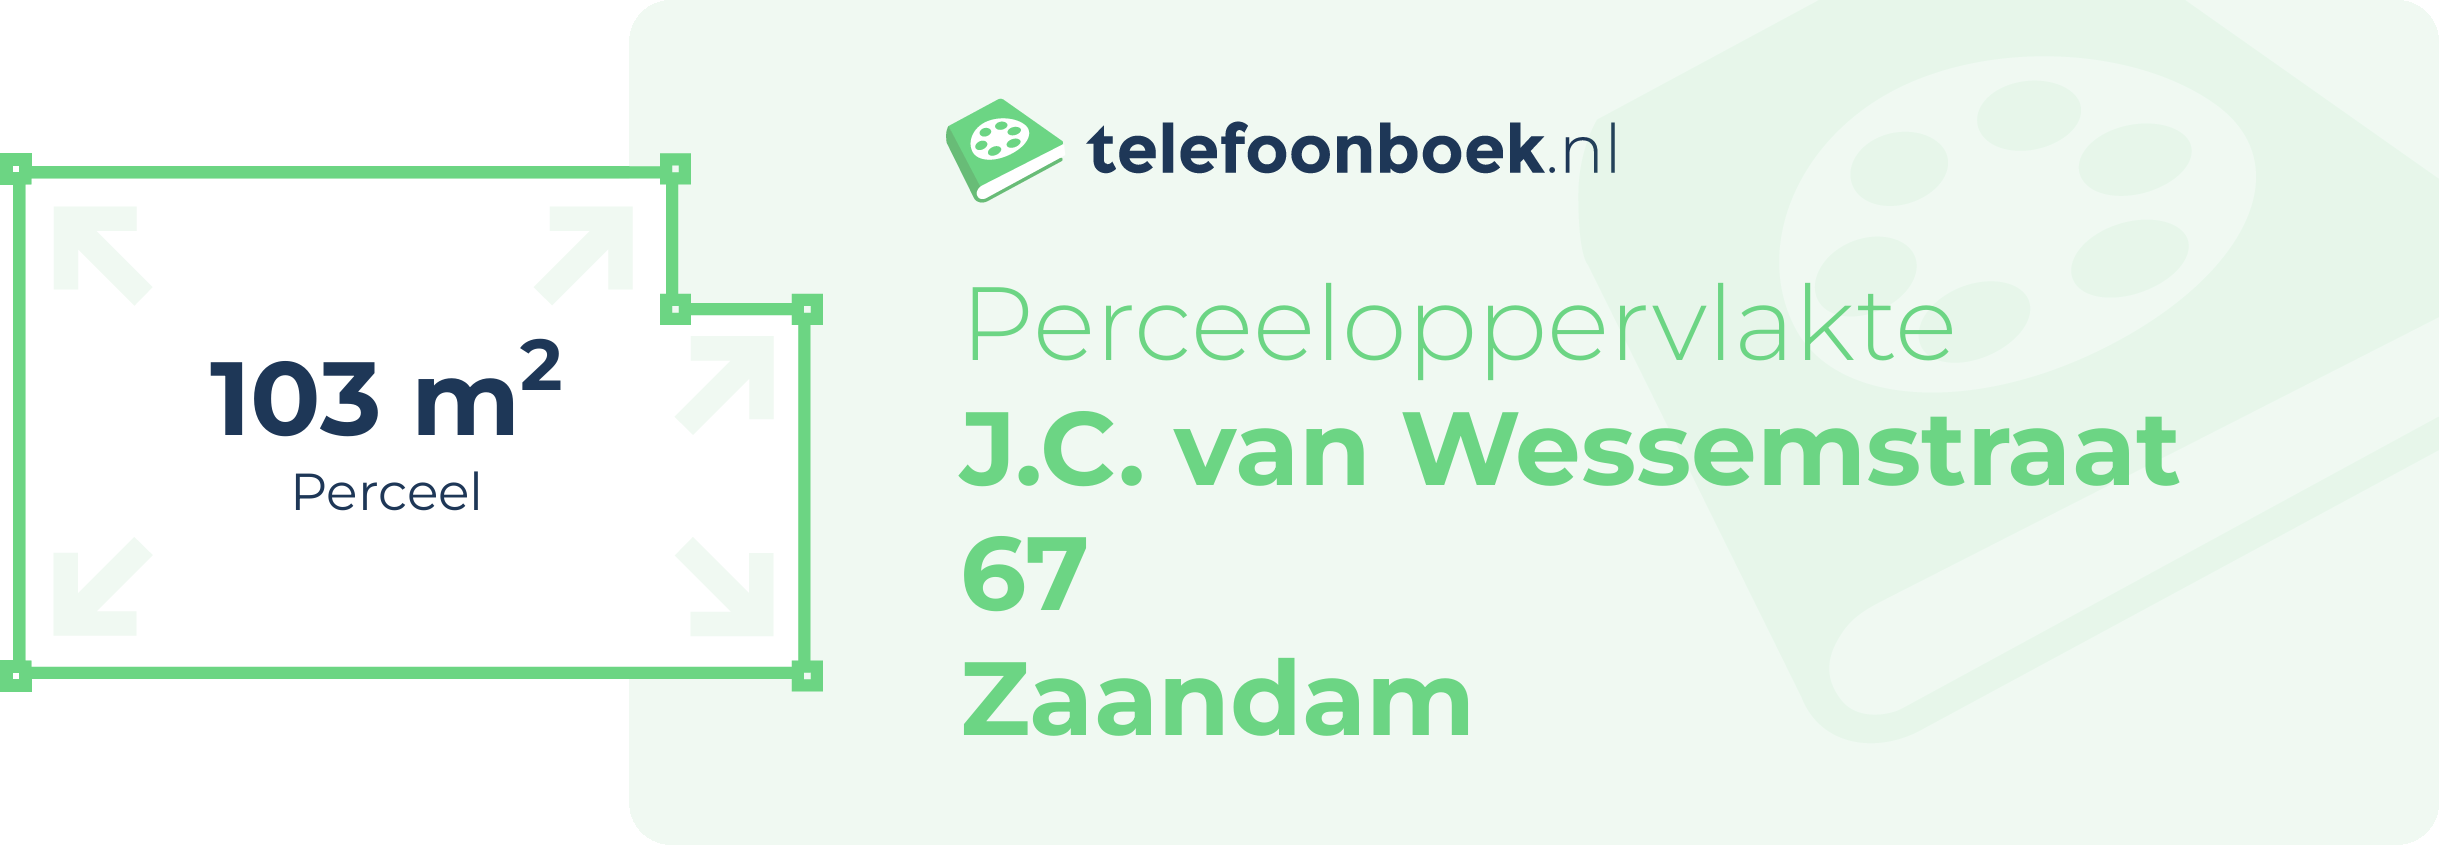 Perceeloppervlakte J.C. Van Wessemstraat 67 Zaandam